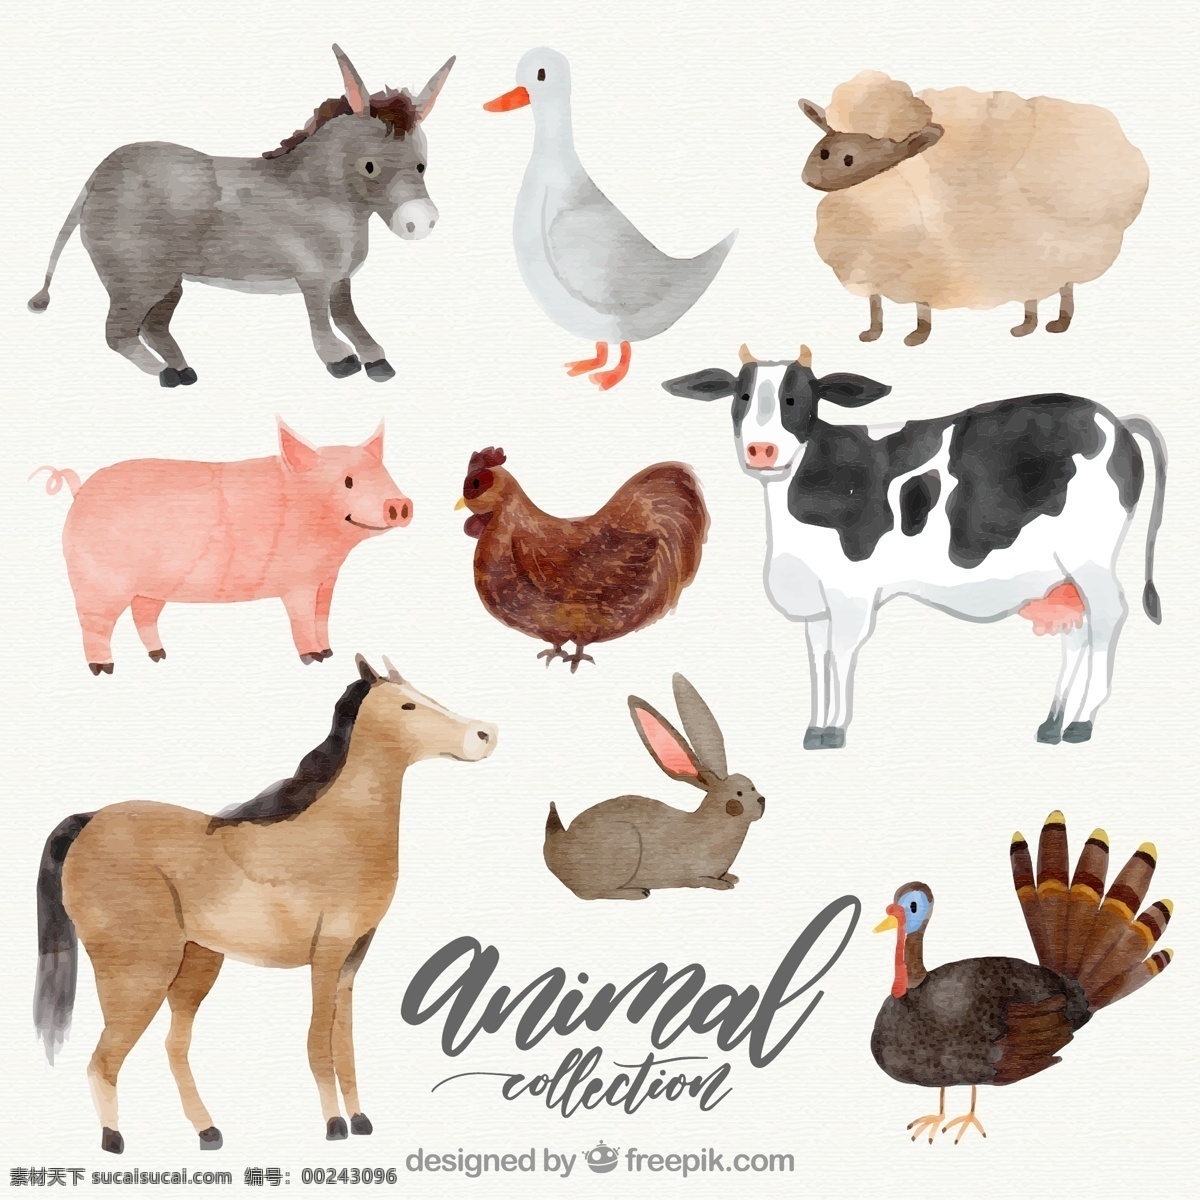 款 水彩 绘 农场 动物 矢量 驴 鹅 绵羊 猪 鸡 奶牛 马 兔子 火鸡 文化艺术 绘画书法